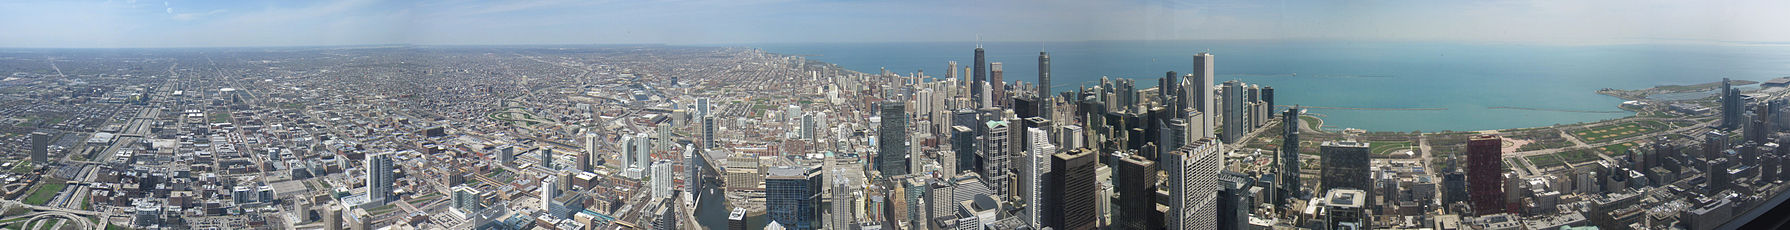 Willis Tower'dan Chicago'nun daha büyük metropol bölgesinin ve yoğun şehir merkezinin görünümü